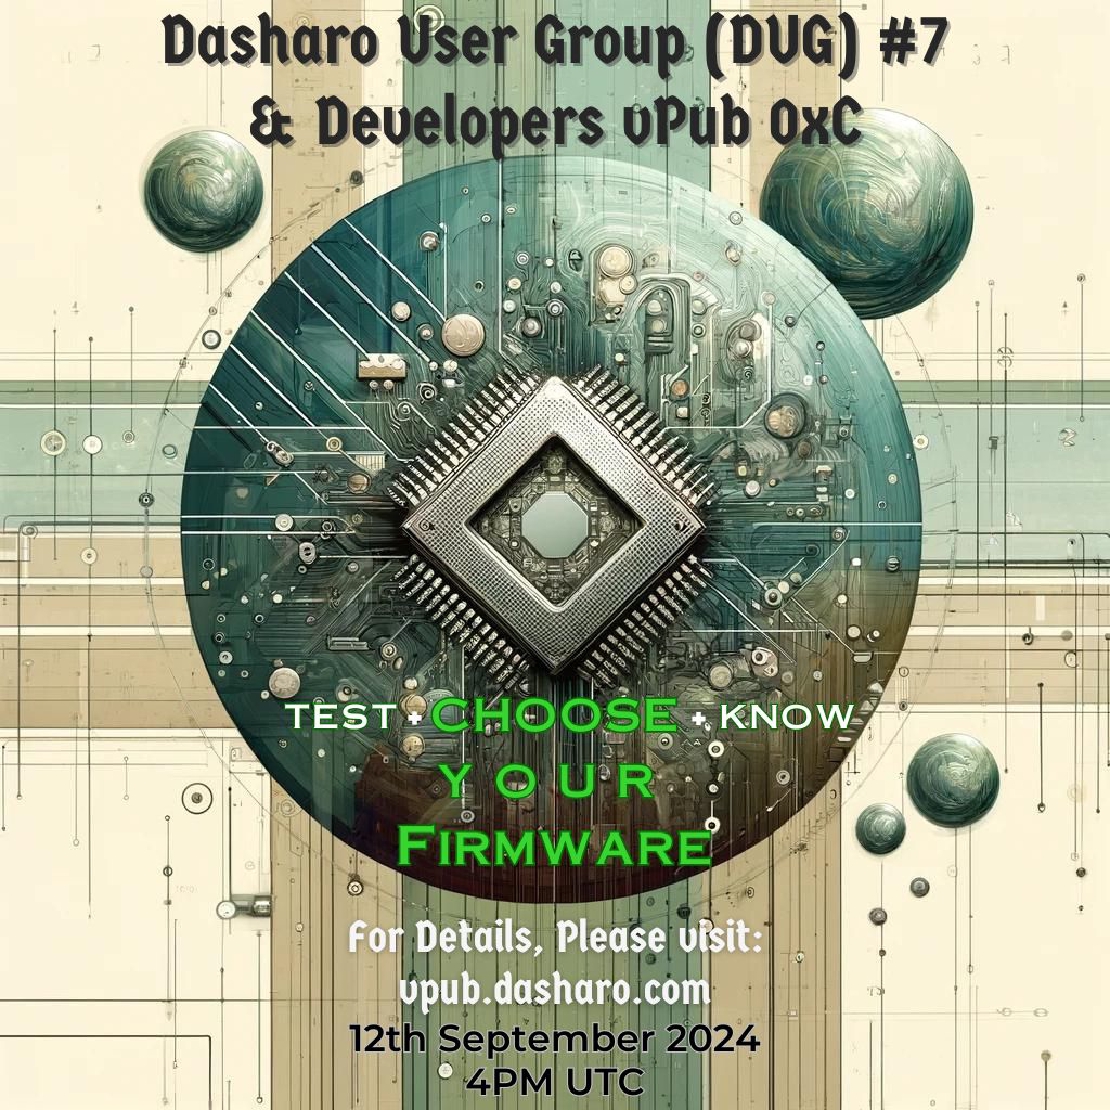 Dasharo User Group 0x7 **& Developers vPub 0xC**